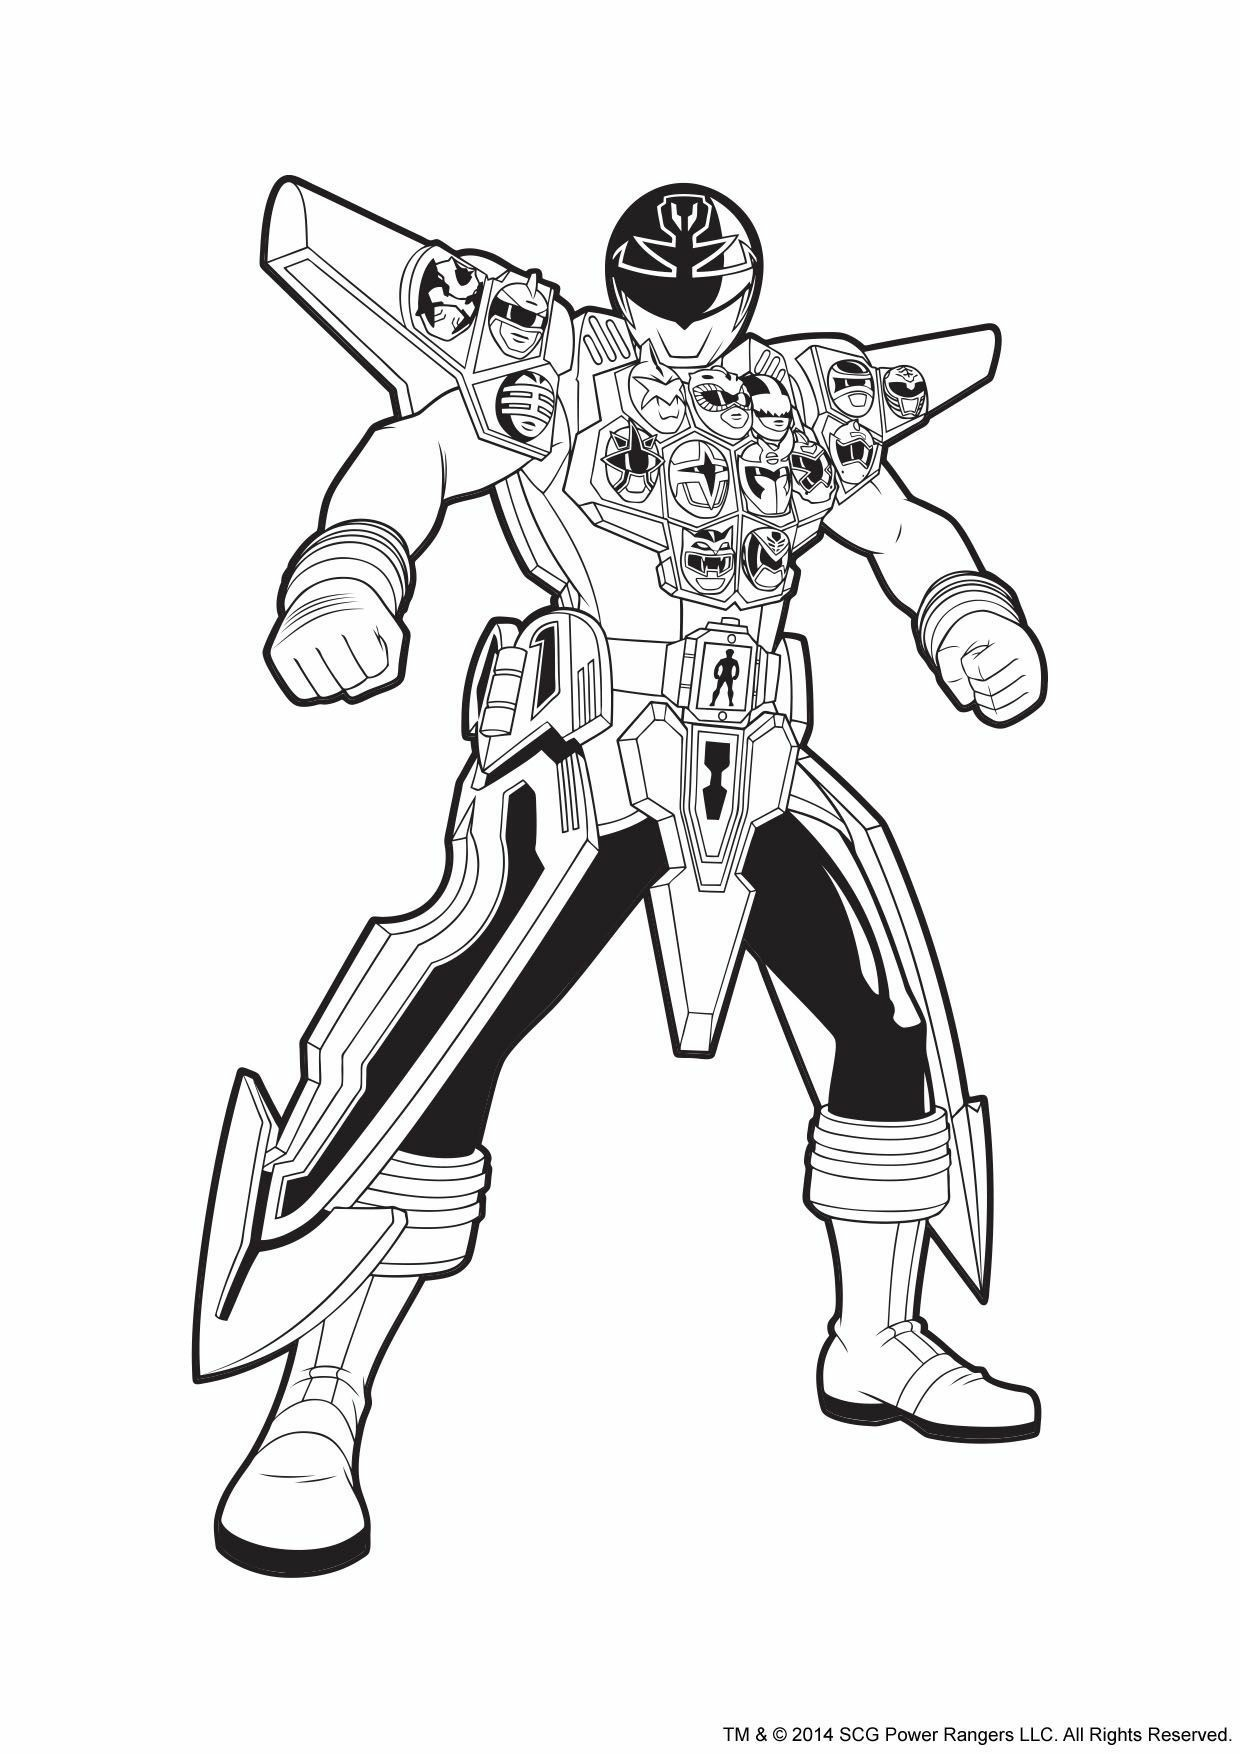   Power Rangers Argent en armure, puissant défenseur 